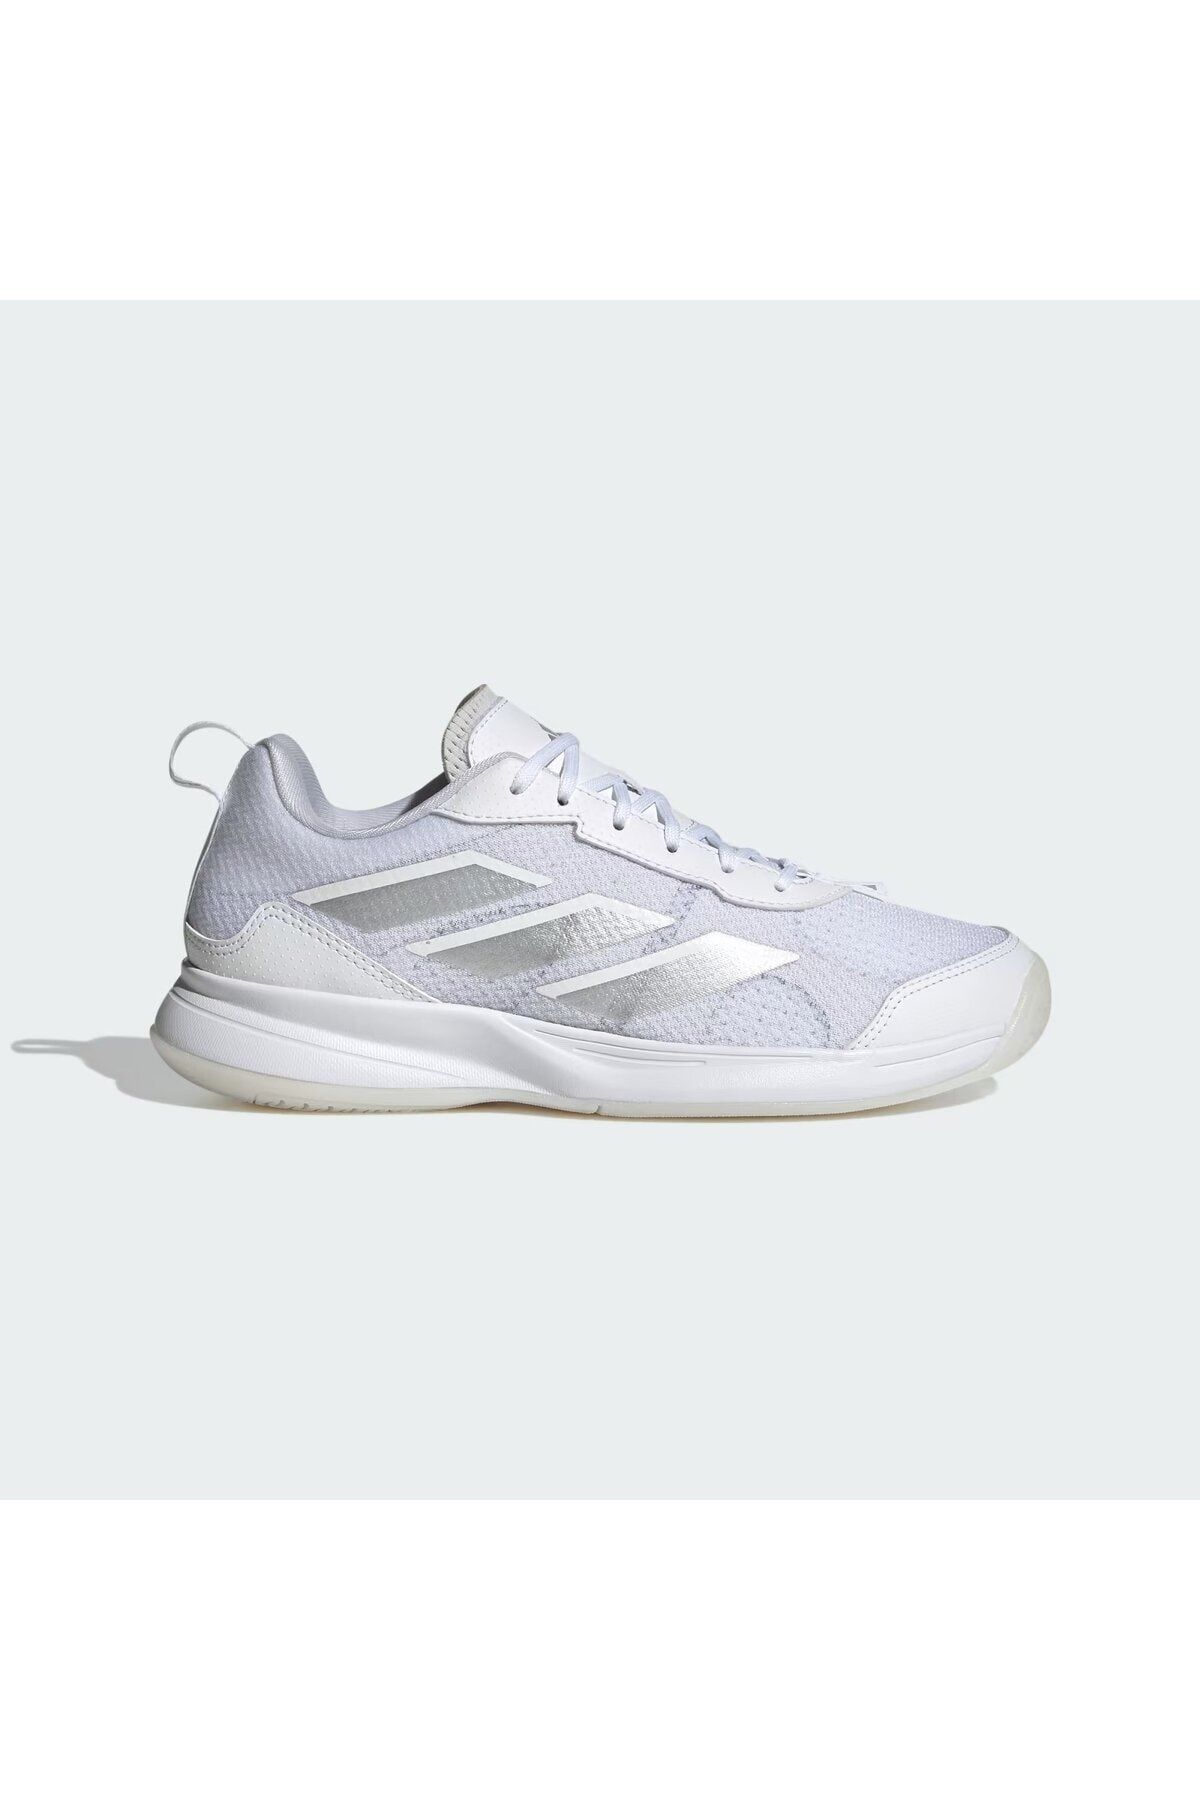 adidas AvaFlash BEYAZ Kadın Tenis Ayakkabısı